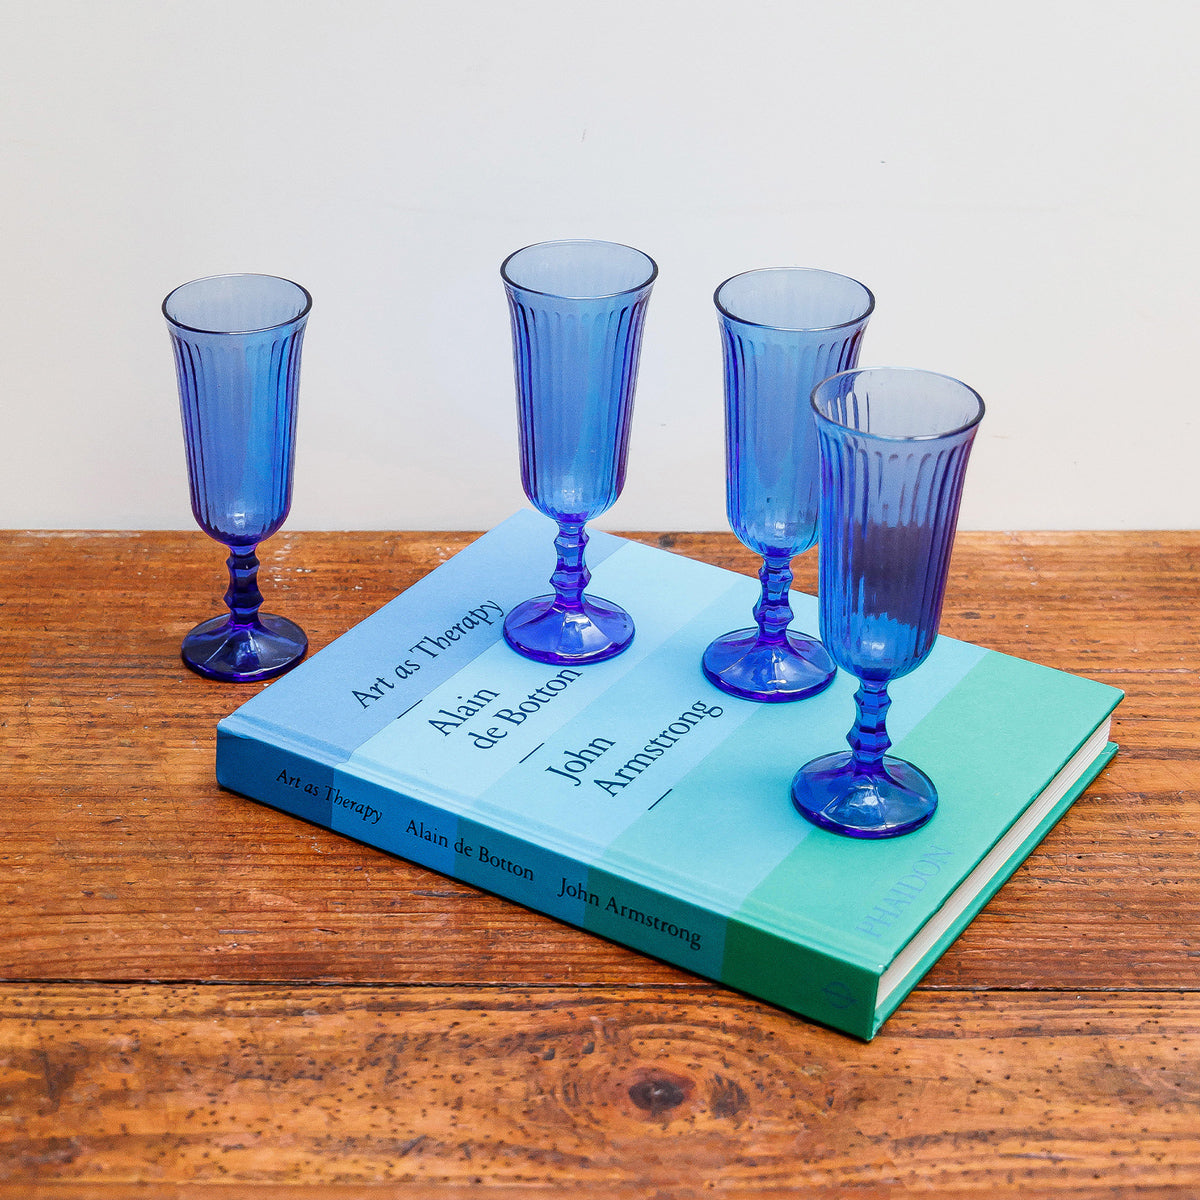 Set of Vintage Blue Champagne Glasses or Flutes